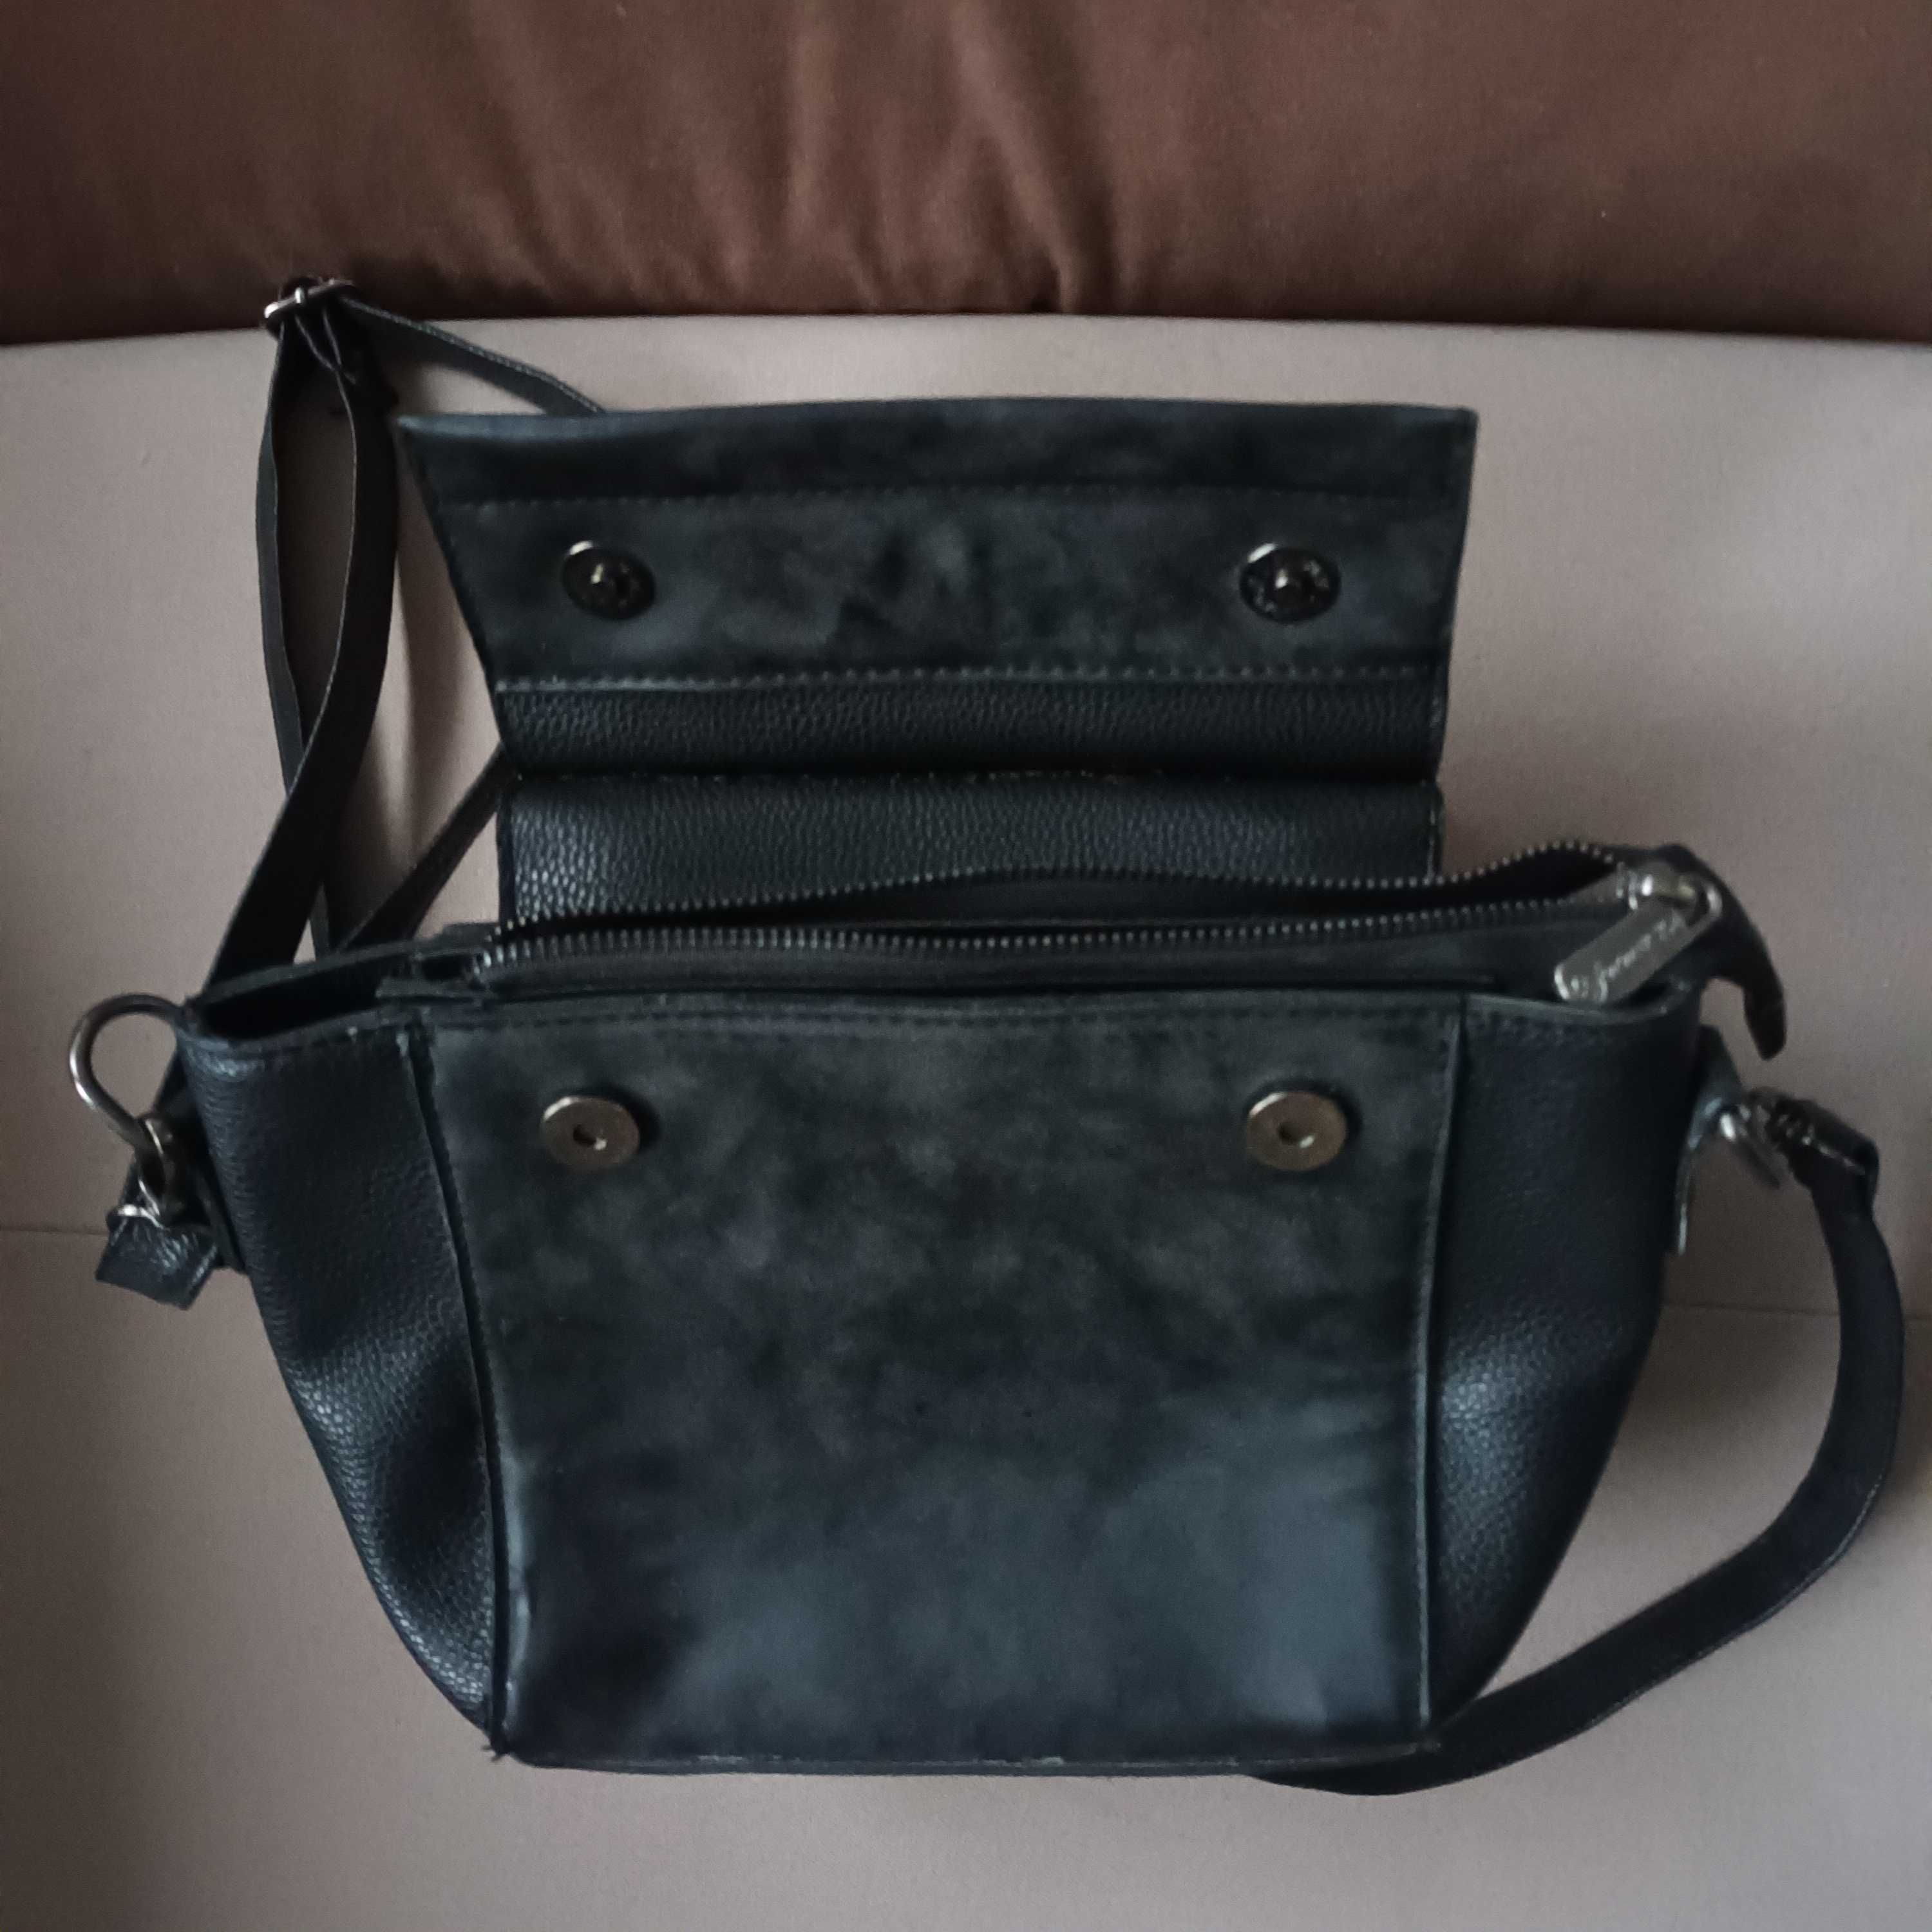 Дамски чанти Guess, Versace 19V69 Italia и други, нови и използвани